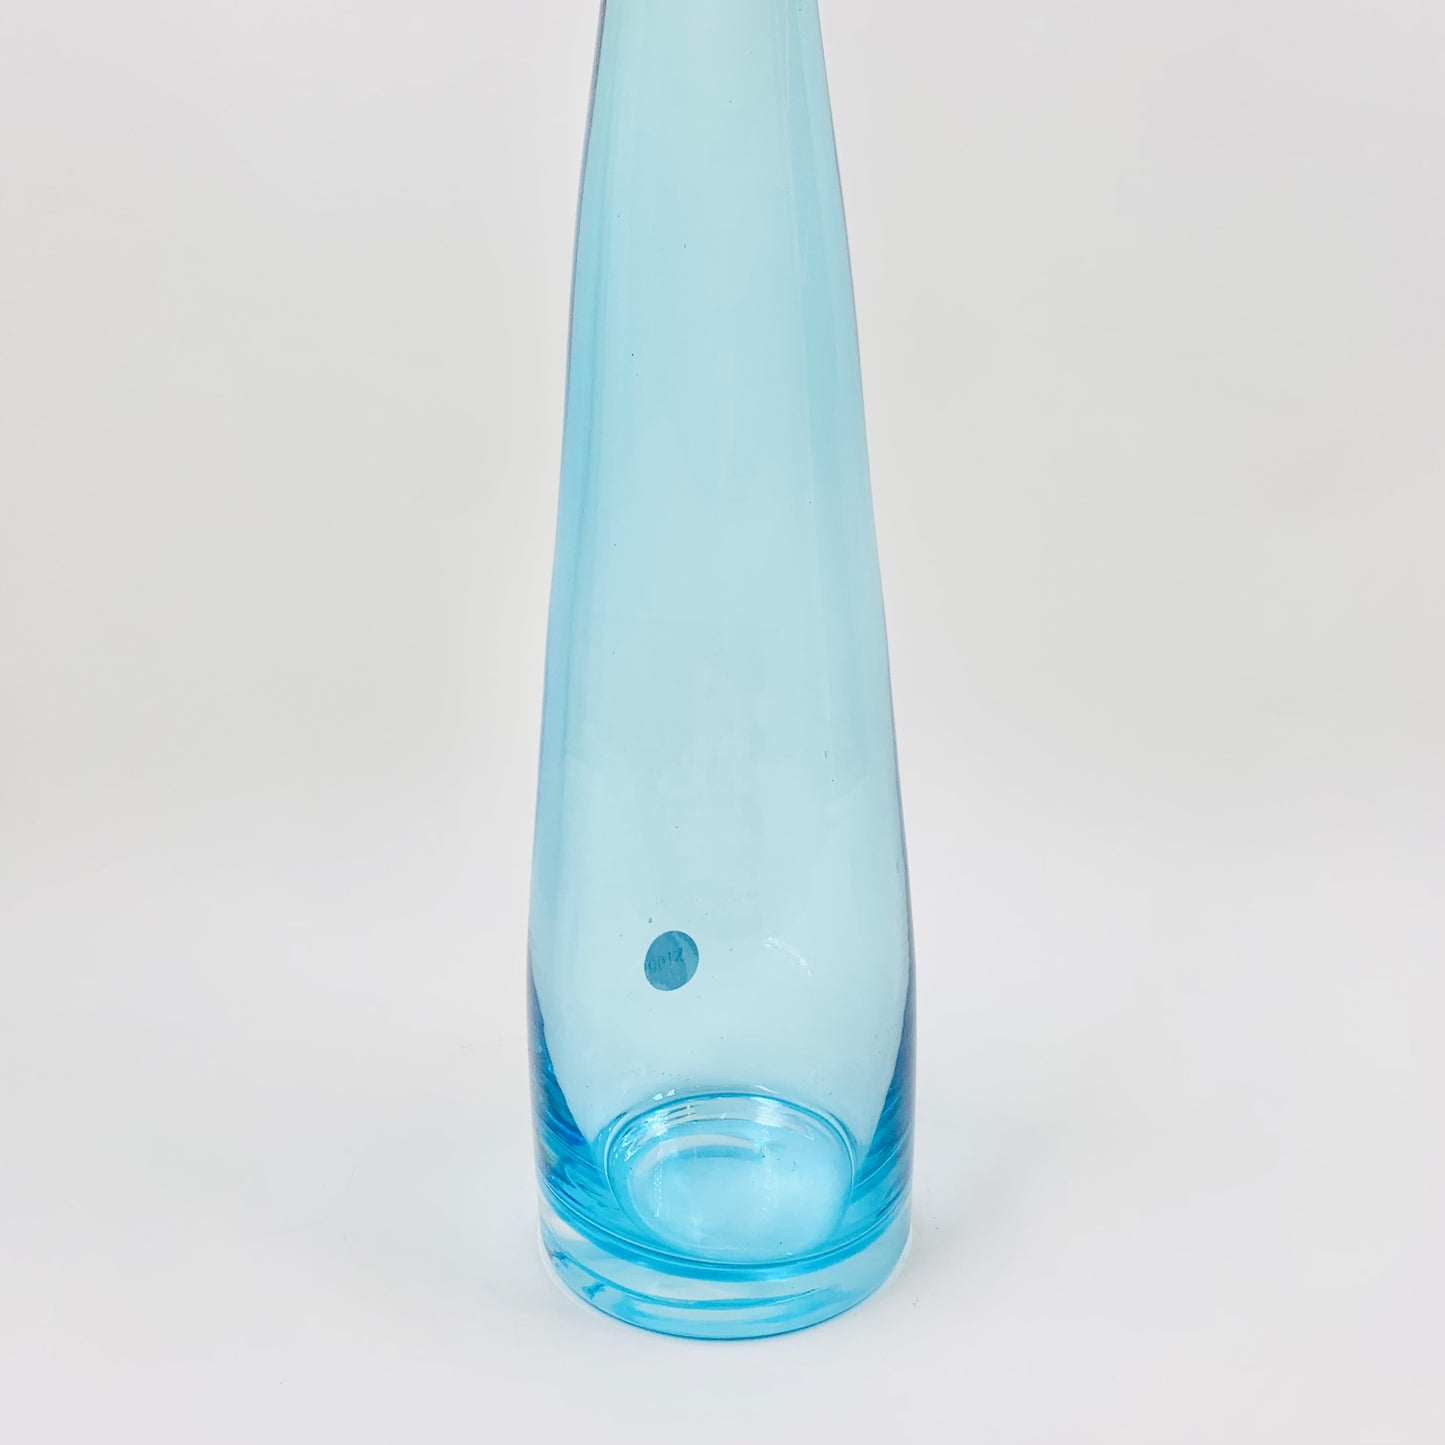 Retro hand made glass bottle vase